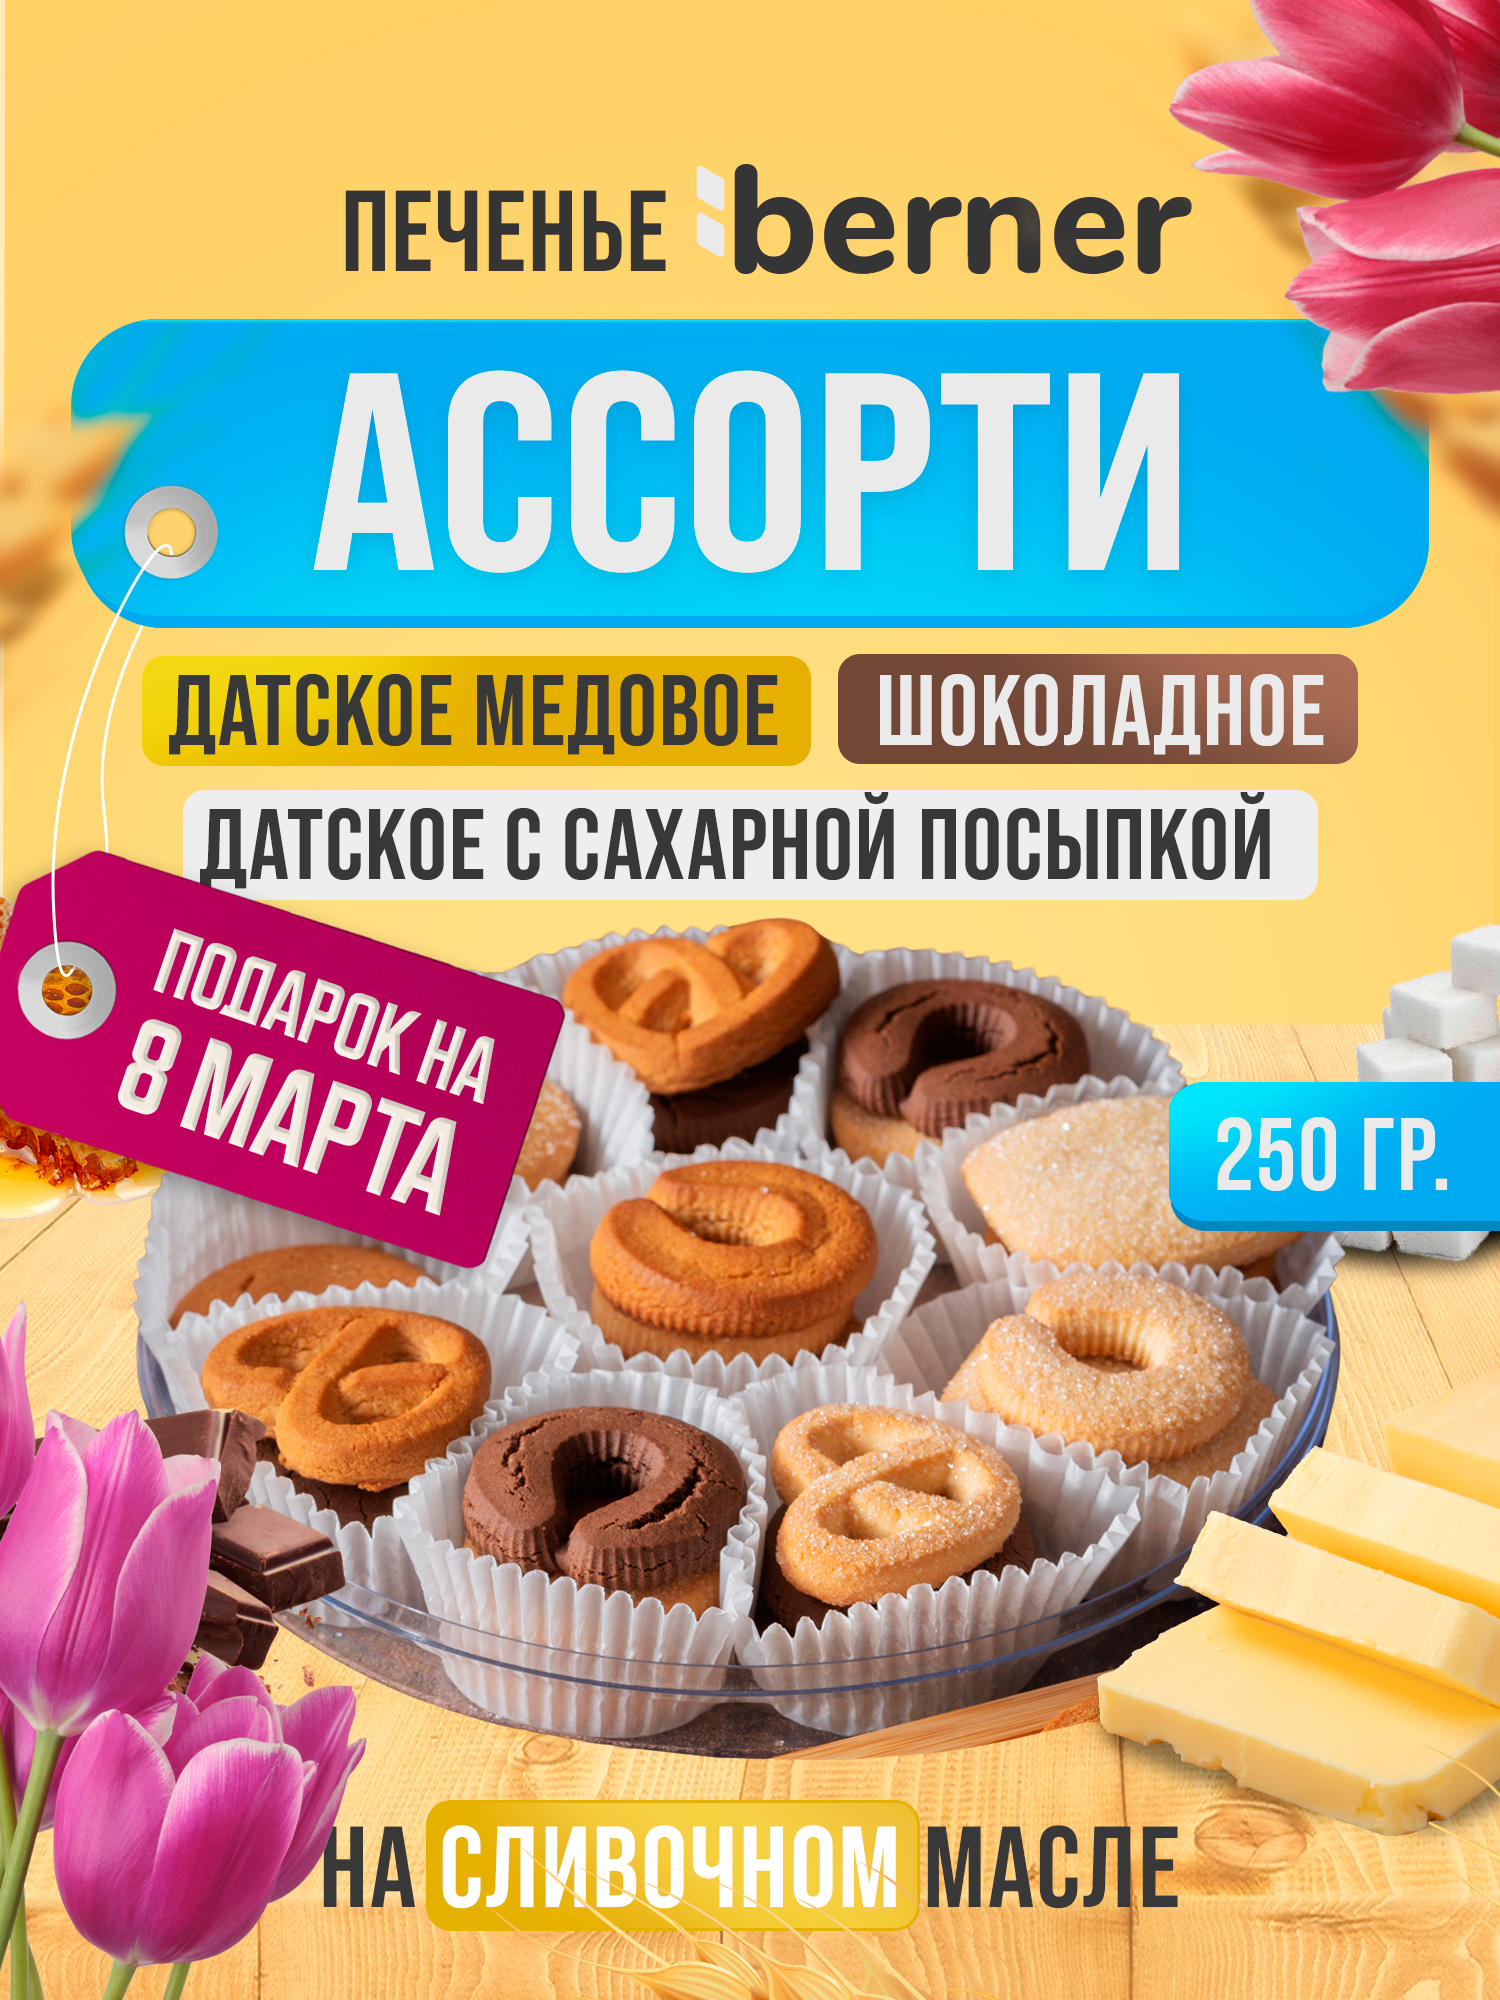 Печенье Berner Датское Шоколадное, Медовое и с сахарной посыпкой, ассорти, 250 г